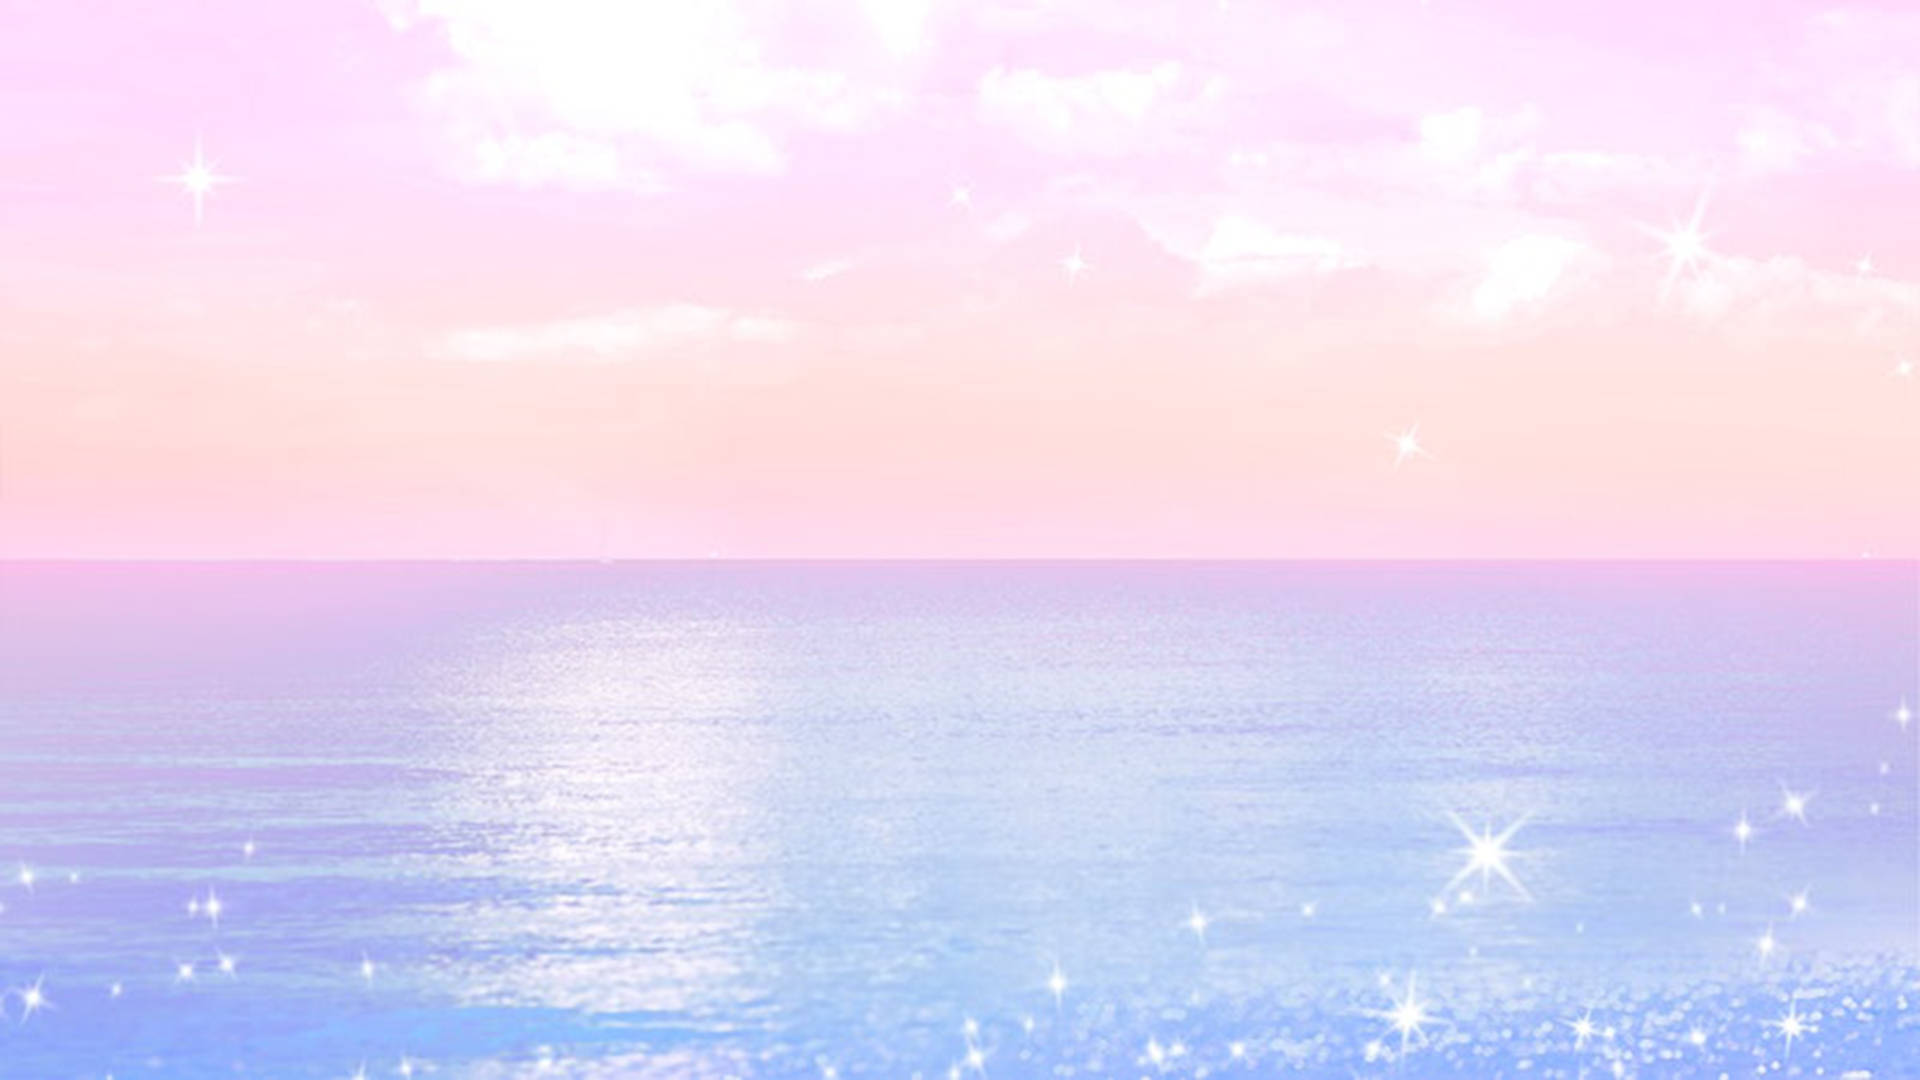 Aesthetic Ocean In Cute Pastel Colors Background